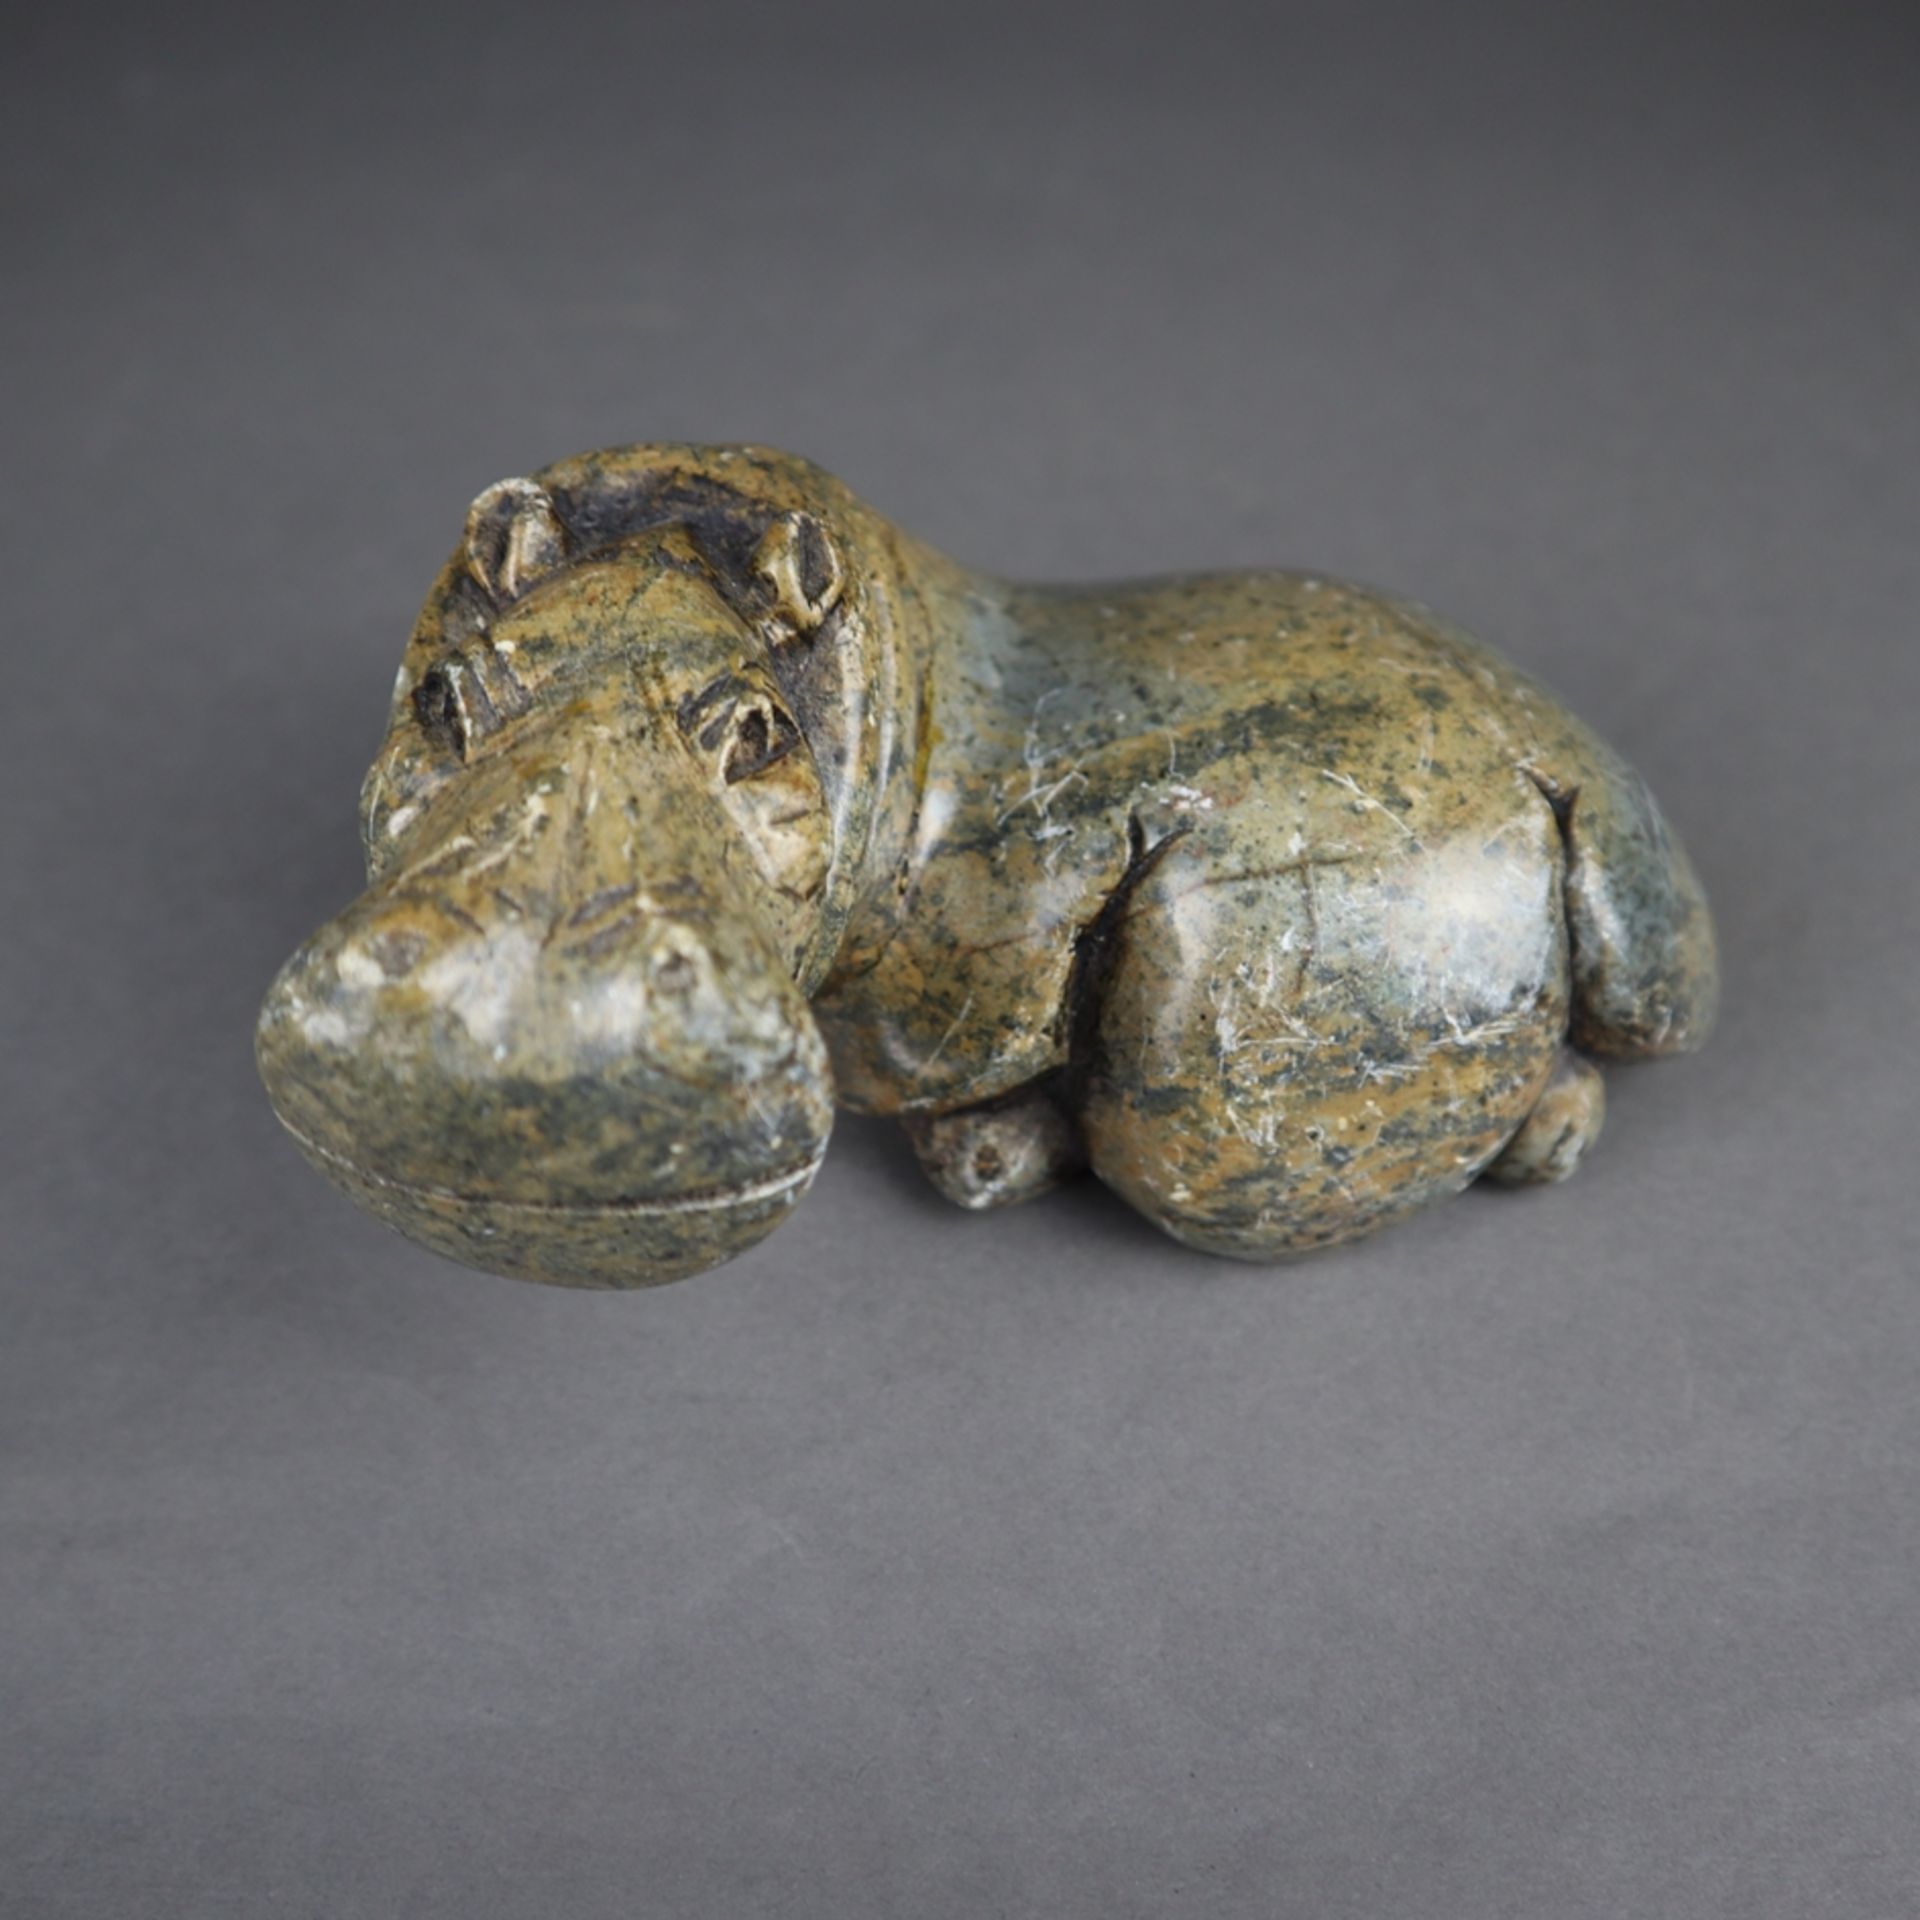 Steinplastik Nilpferd - geschnitzt, vollplastische naturalistische Darstellung eines liegenden